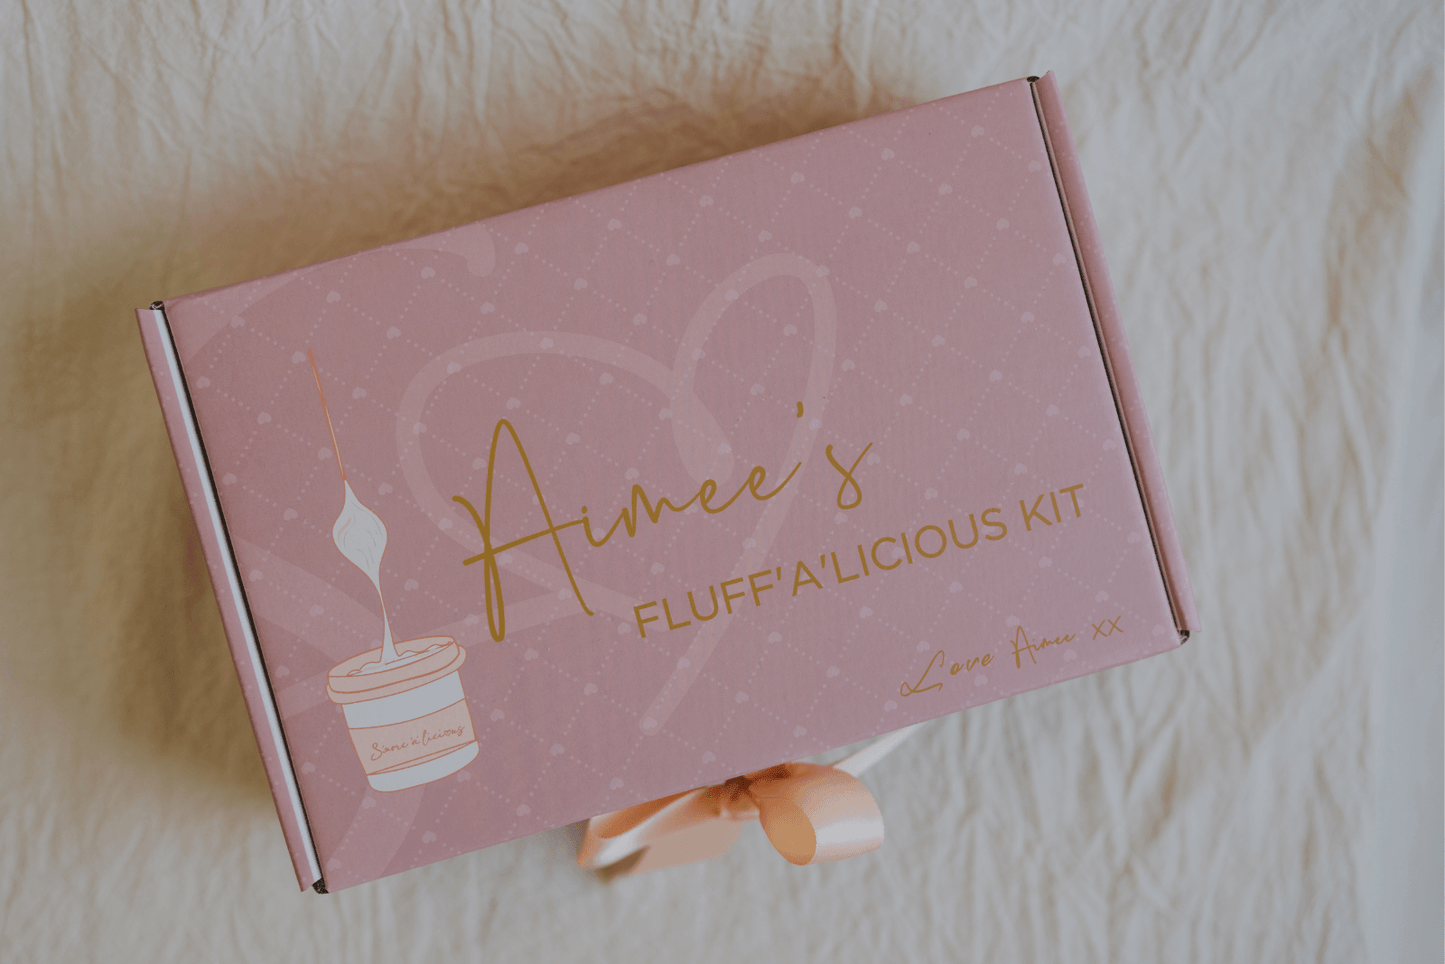 Aimee's Fluff'a'licious Kit